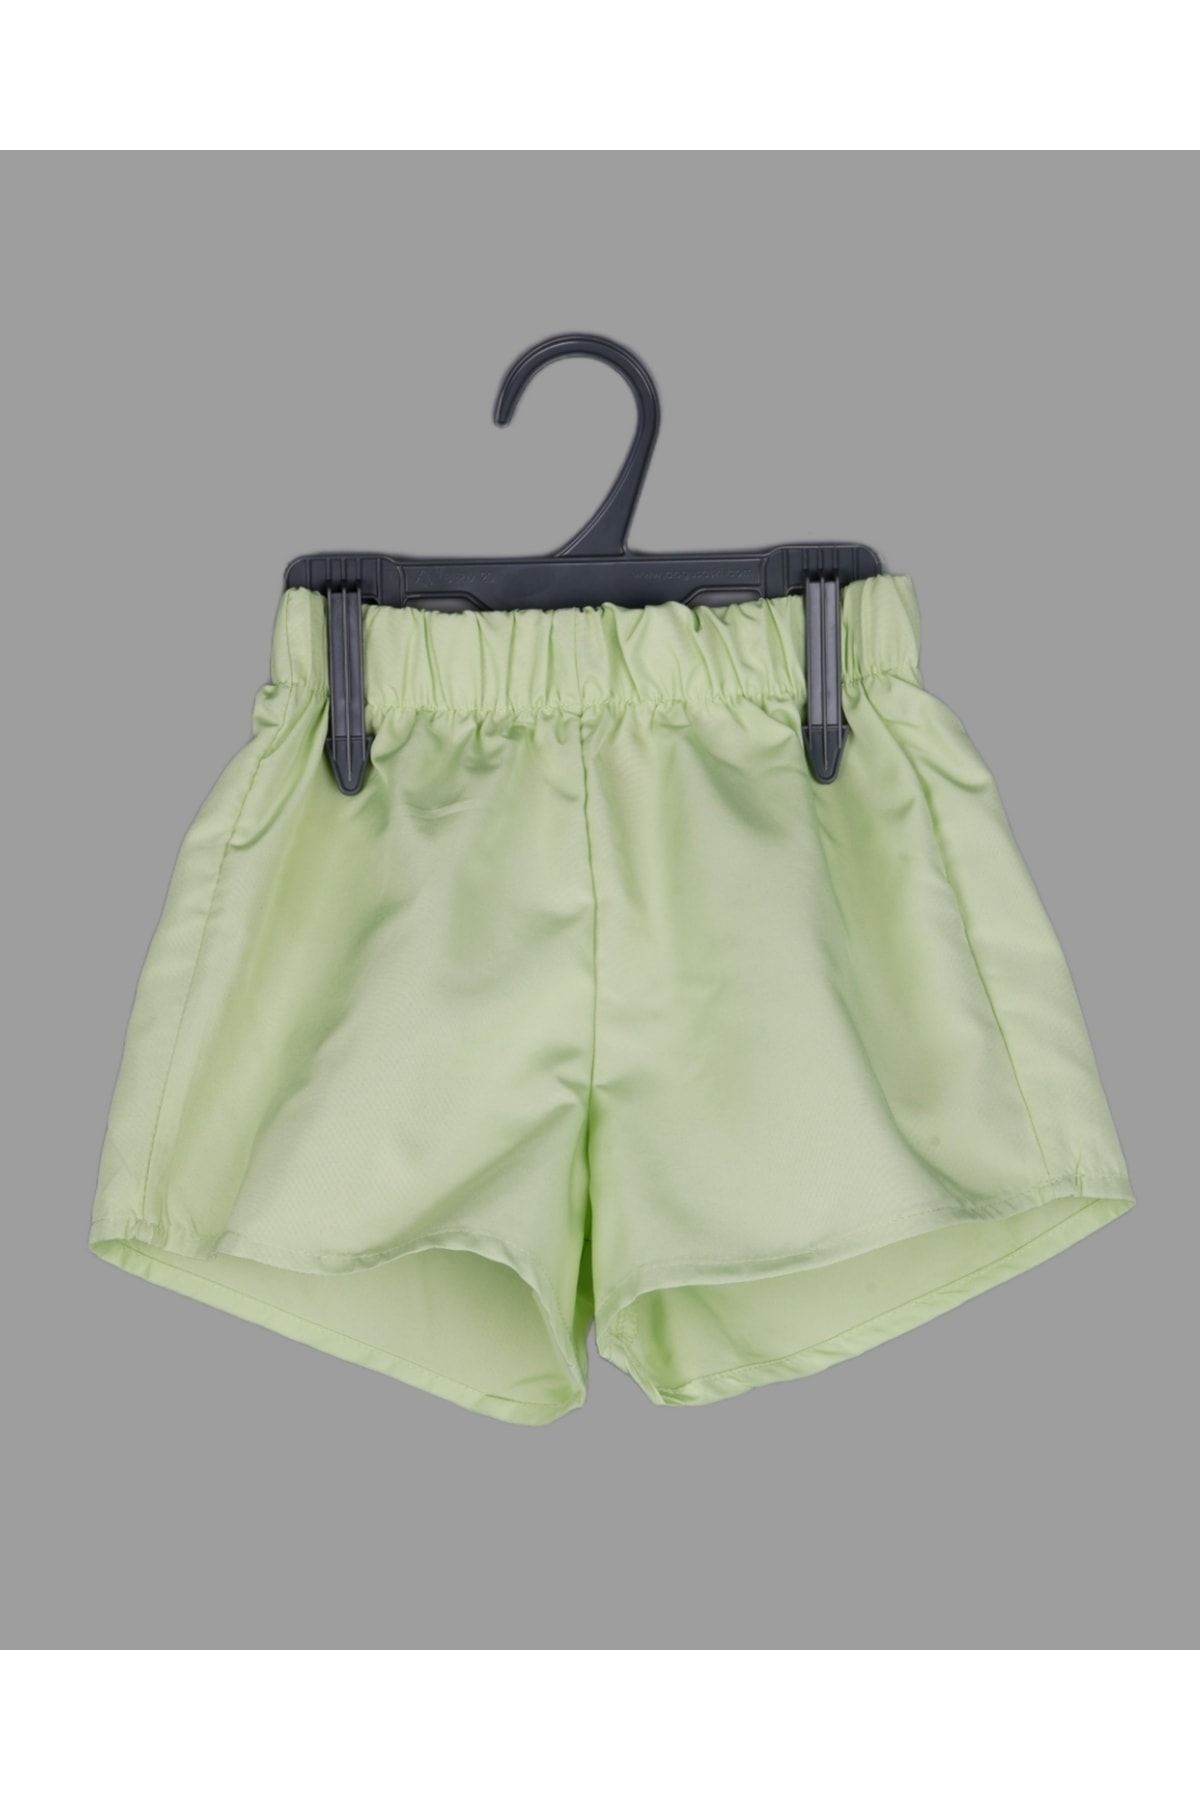 Esa Moda Kız Çocuk Neon Yeşil Yüzme Şort